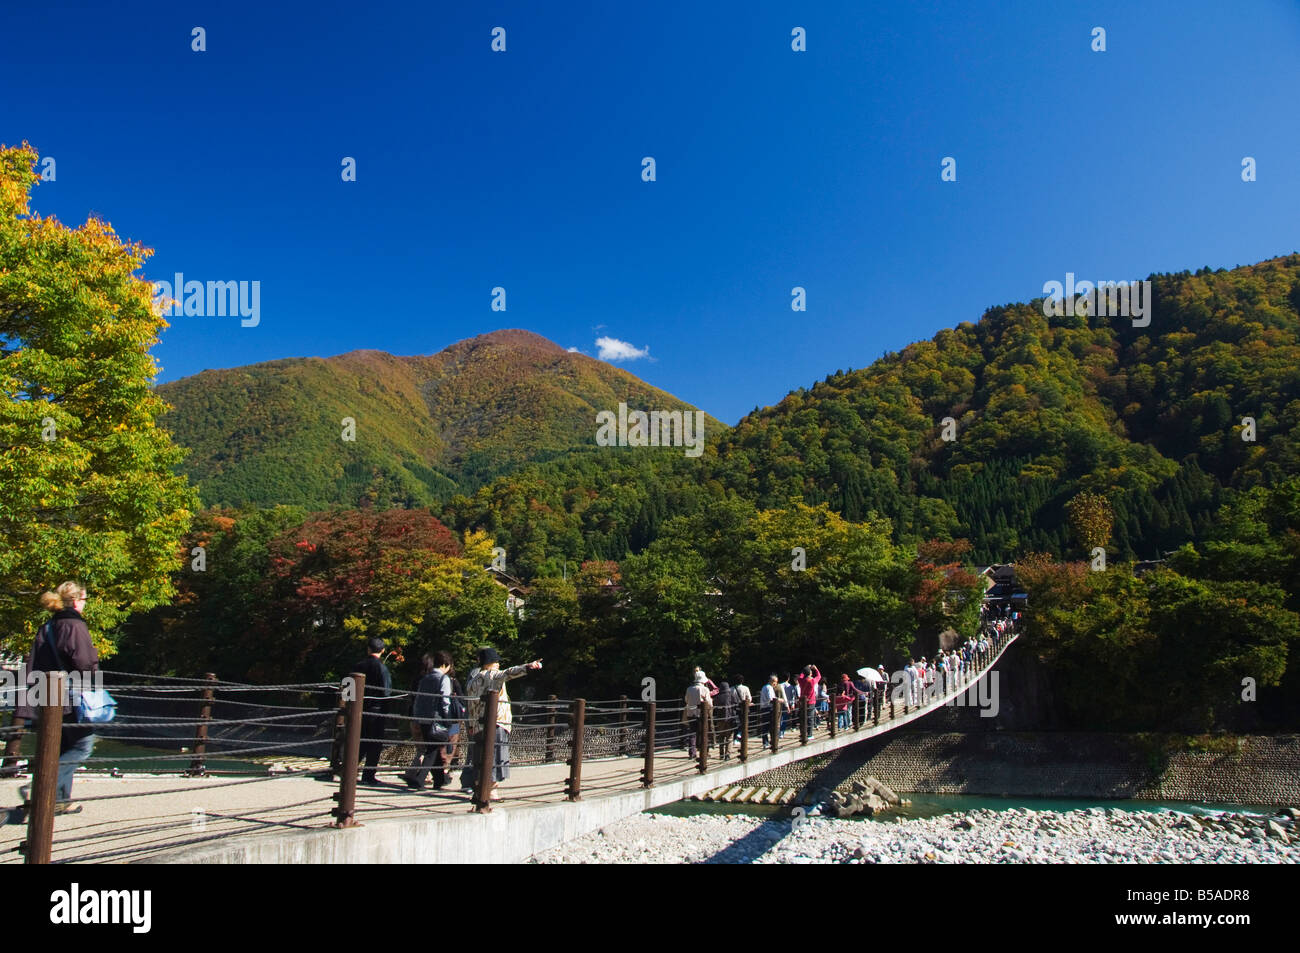 Suspension bridge with tourists at Site of Gassho Zukkuri, Shirakawago District, Ogi Town, Gifu Prefecture, Honshu Island, Japan Stock Photo